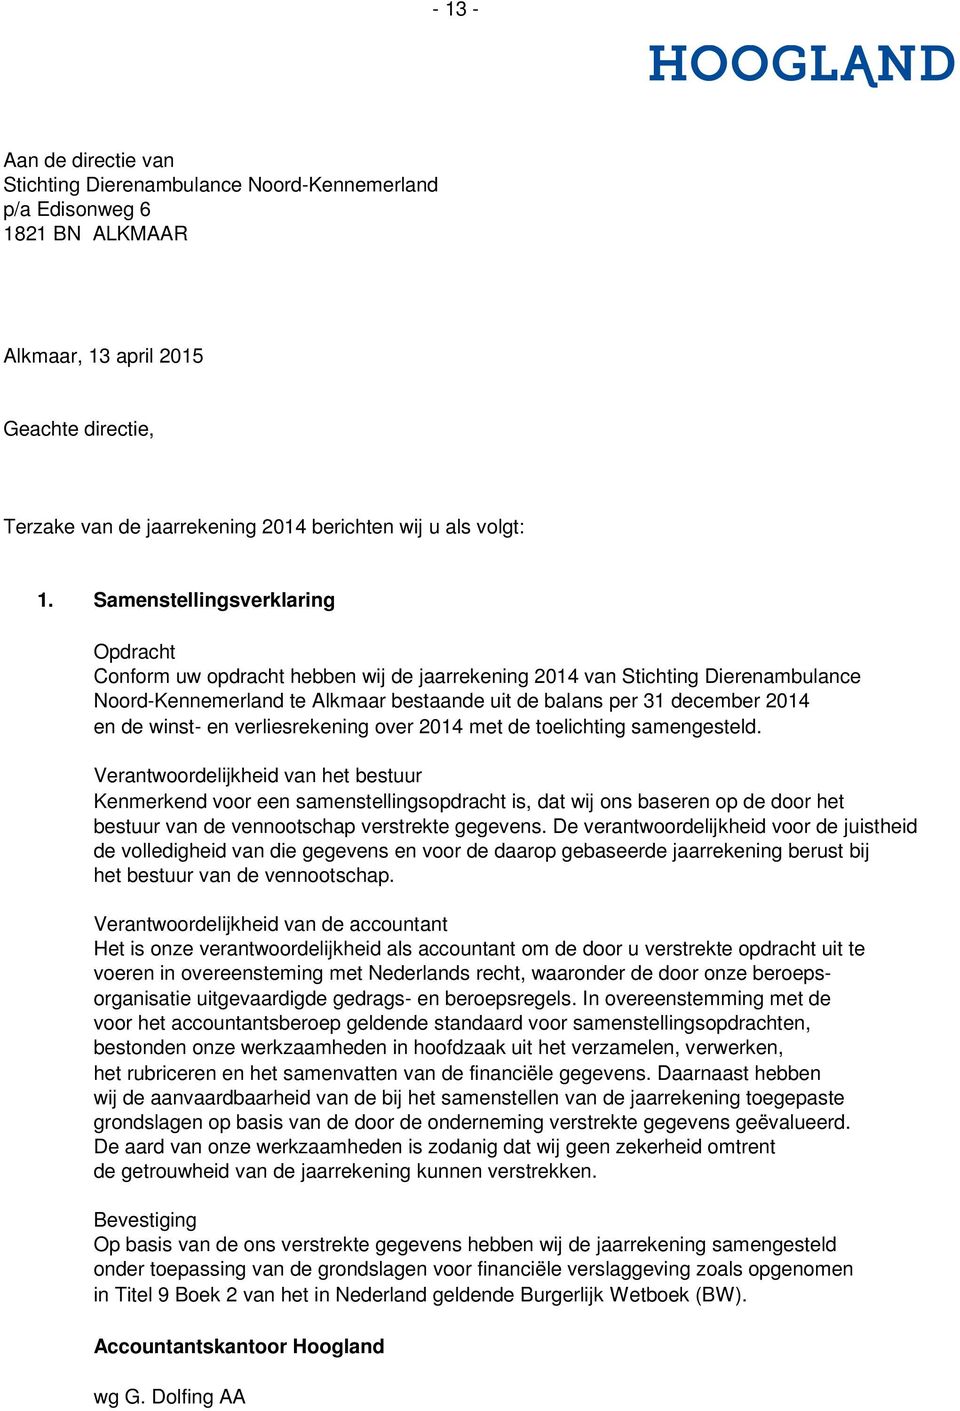 Samenstellingsverklaring Opdracht Conform uw opdracht hebben wij de jaarrekening 2014 van Stichting Dierenambulance Noord-Kennemerland te Alkmaar bestaande uit de balans per 31 december 2014 en de